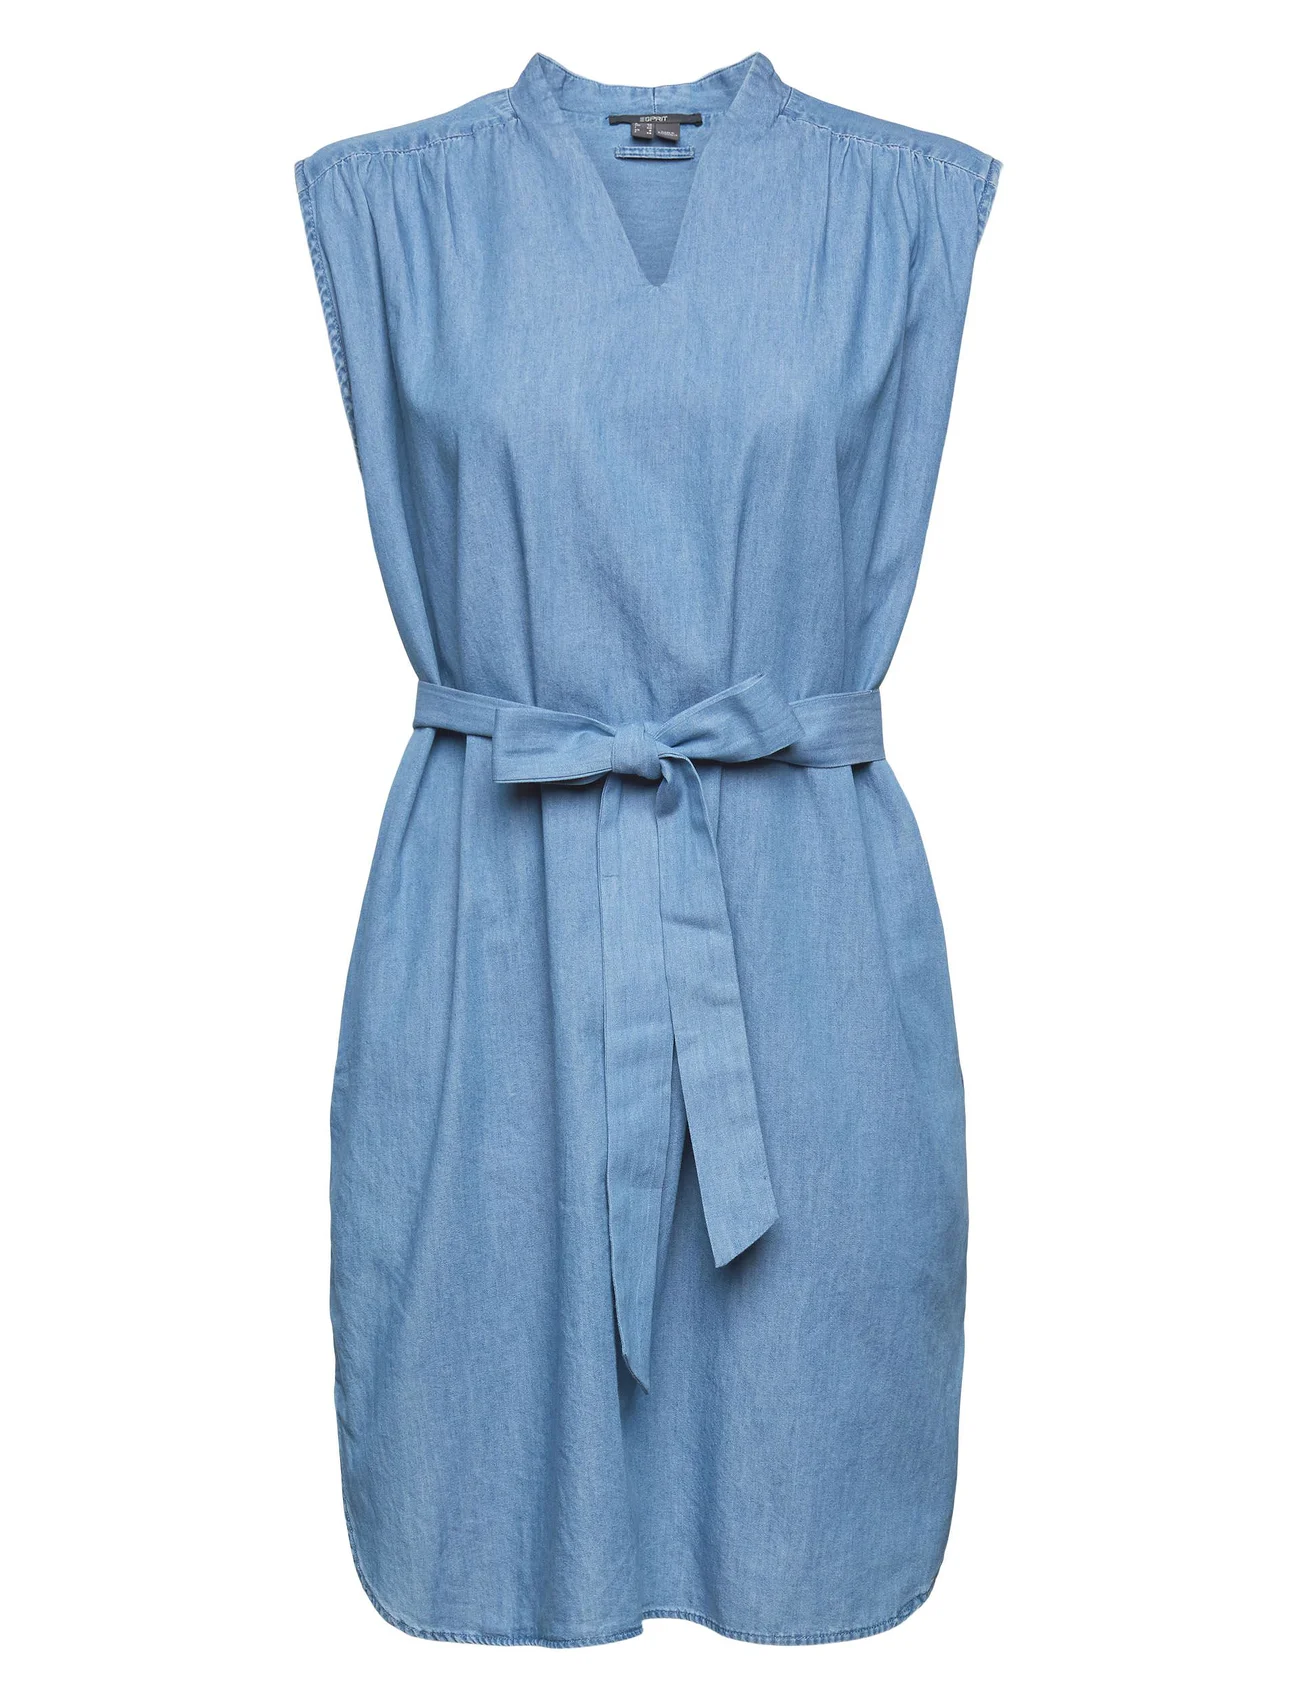 Esprit Collection - Denim-effect dress - skjortklänningar - blue medium wash - 0